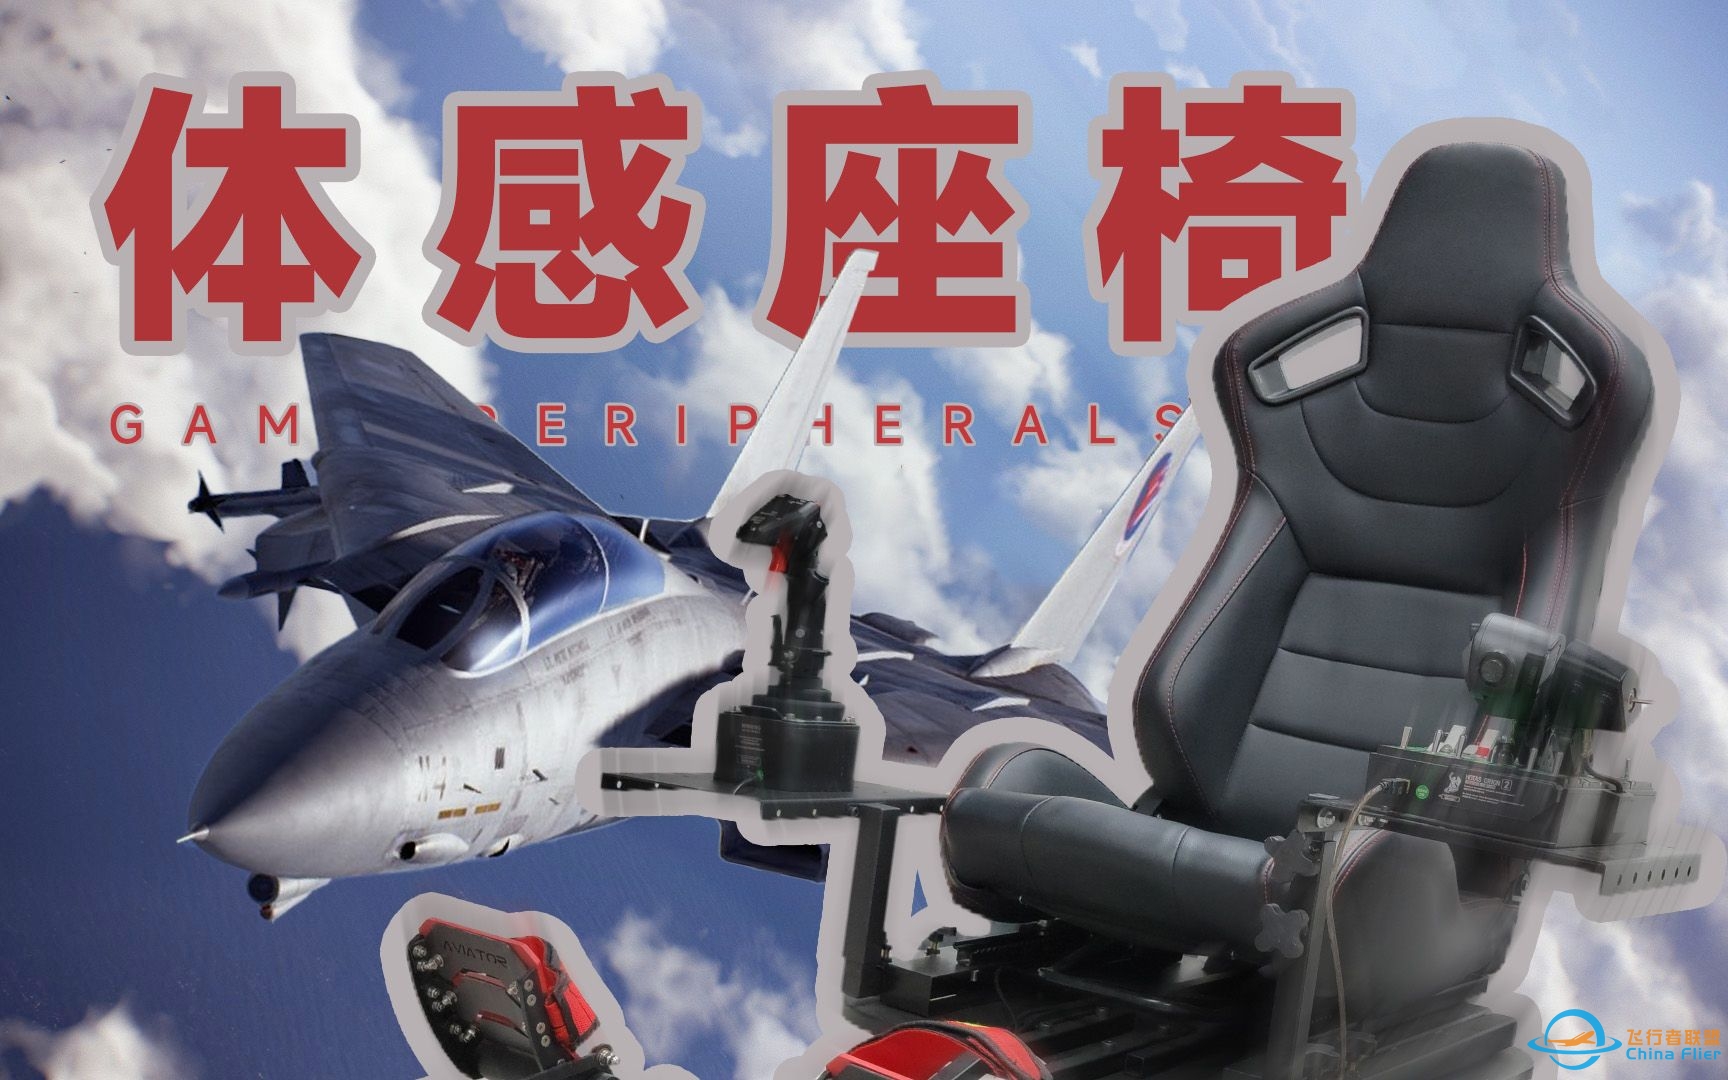 【富哥装备】来体验一张会动的飞行模拟凳子 | InfuDeck VR体感模拟器-843 